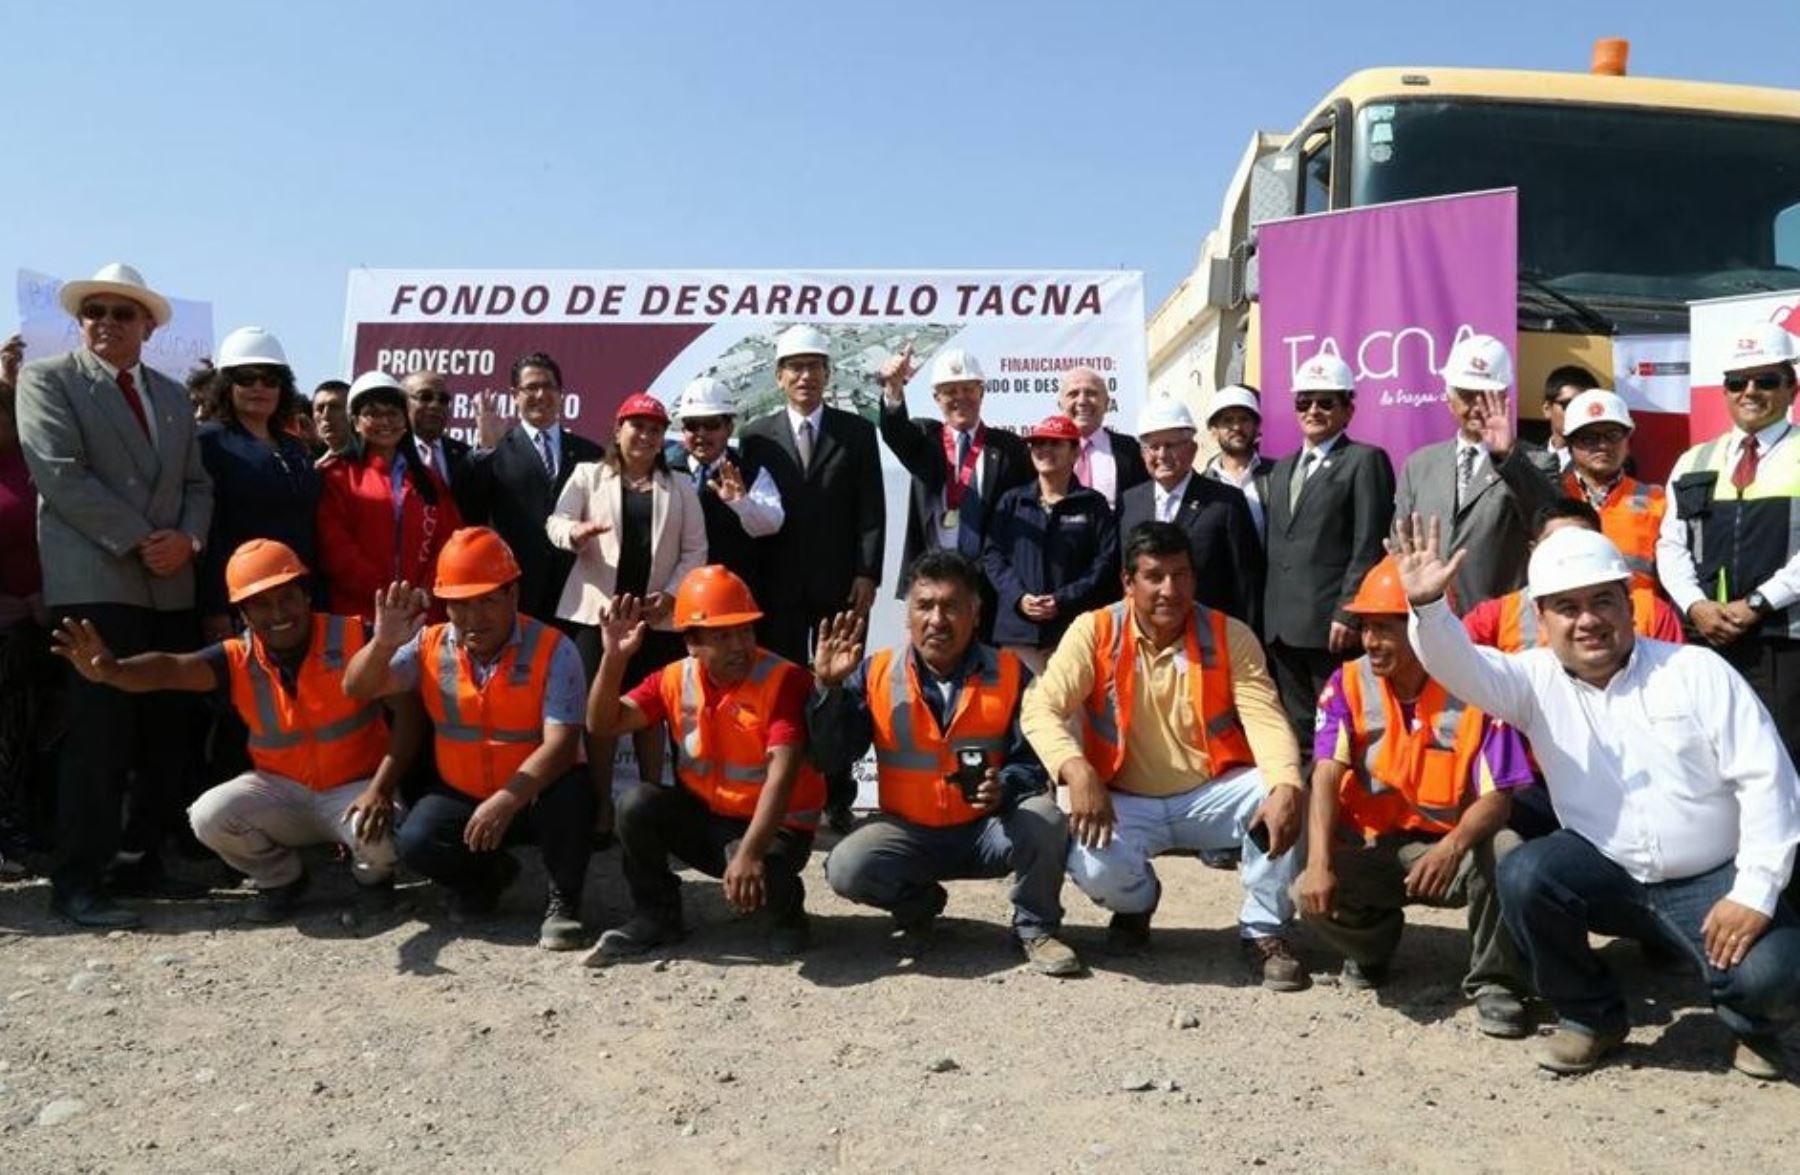 El gobernador regional de Tacna, Omar Jiménez, destacó hoy el apoyo del Ejecutivo para lograr que la Zona Franca de Tacna (Zofra Tacna) iguale en competitividad a las zonas francas de Colombia, Chile y México, países que integran la Alianza del Pacífico.